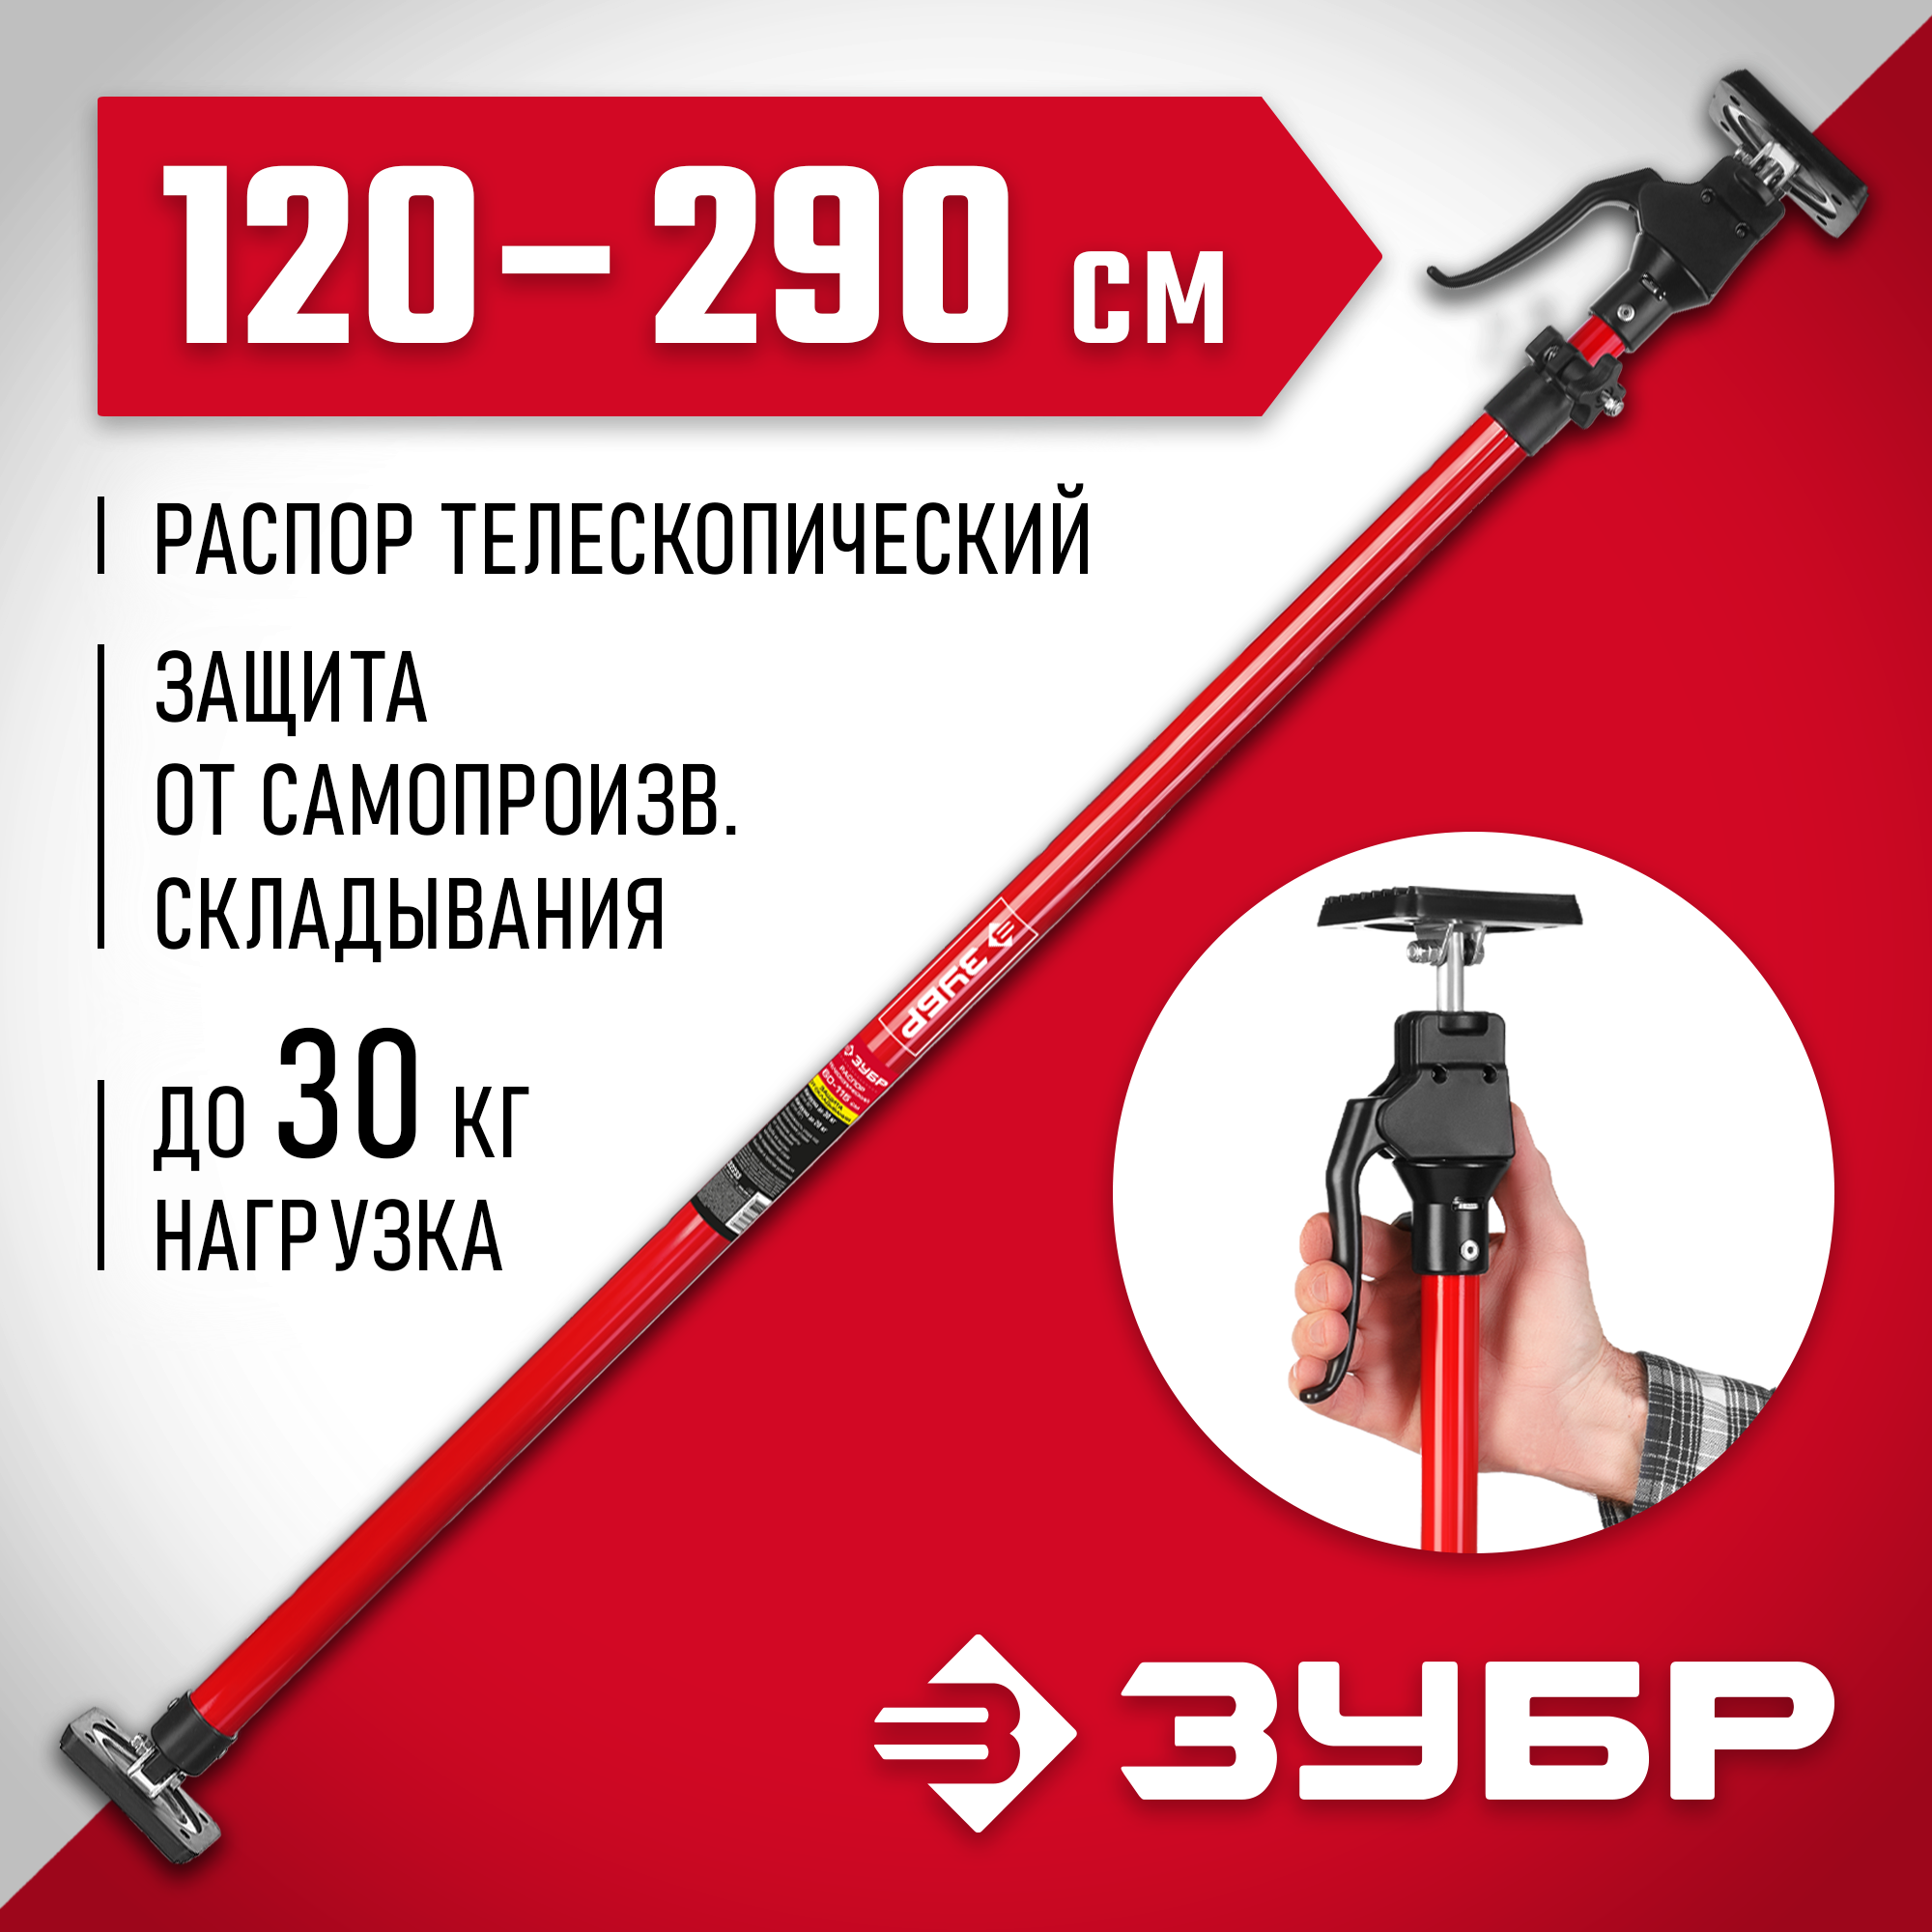 ЗУБР РТ-290 120-290 см, Телескопический распор (32234)